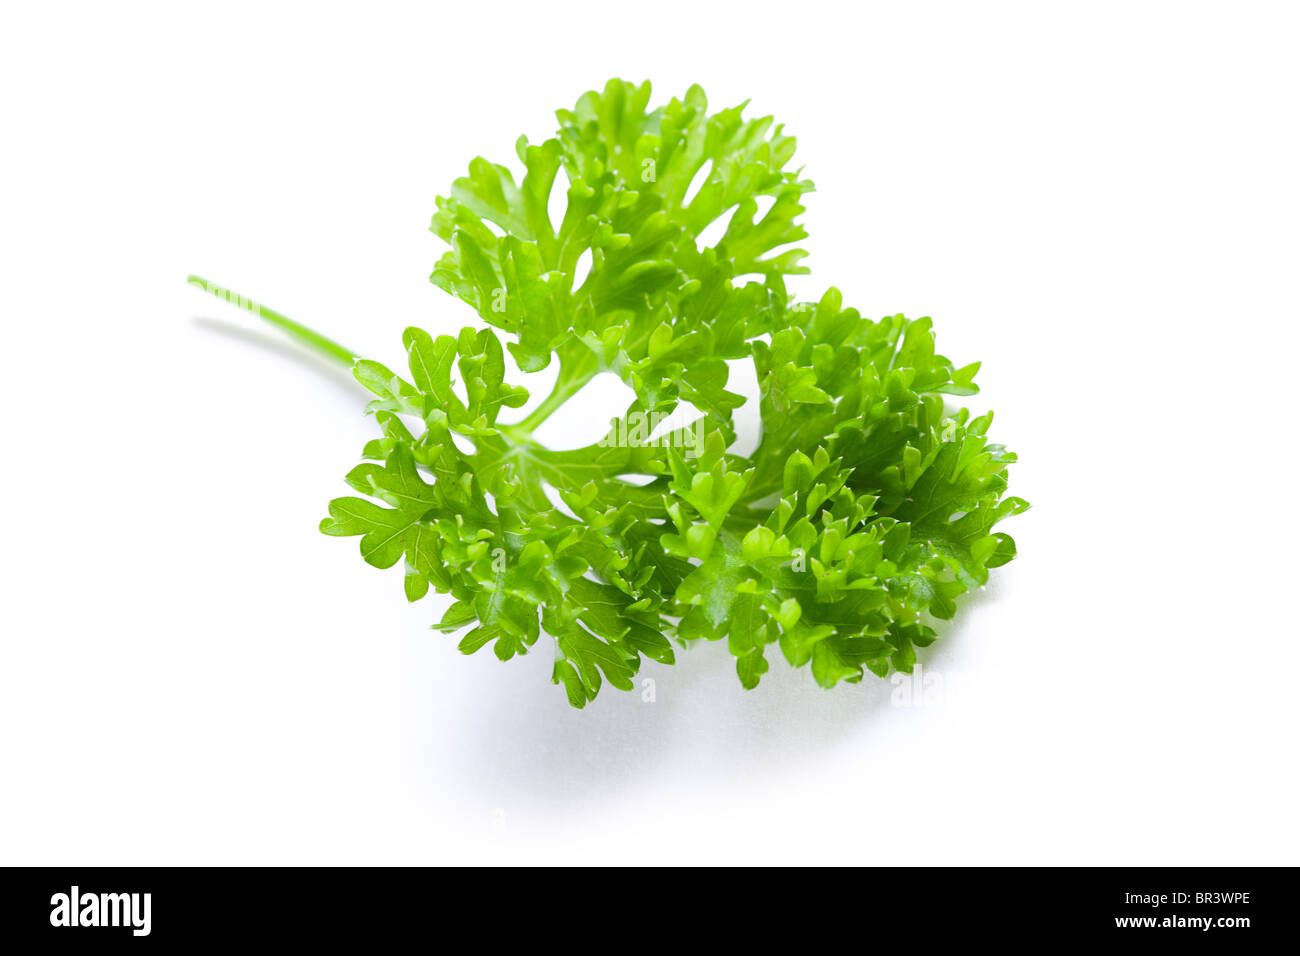 parsley on white background Stock Photo